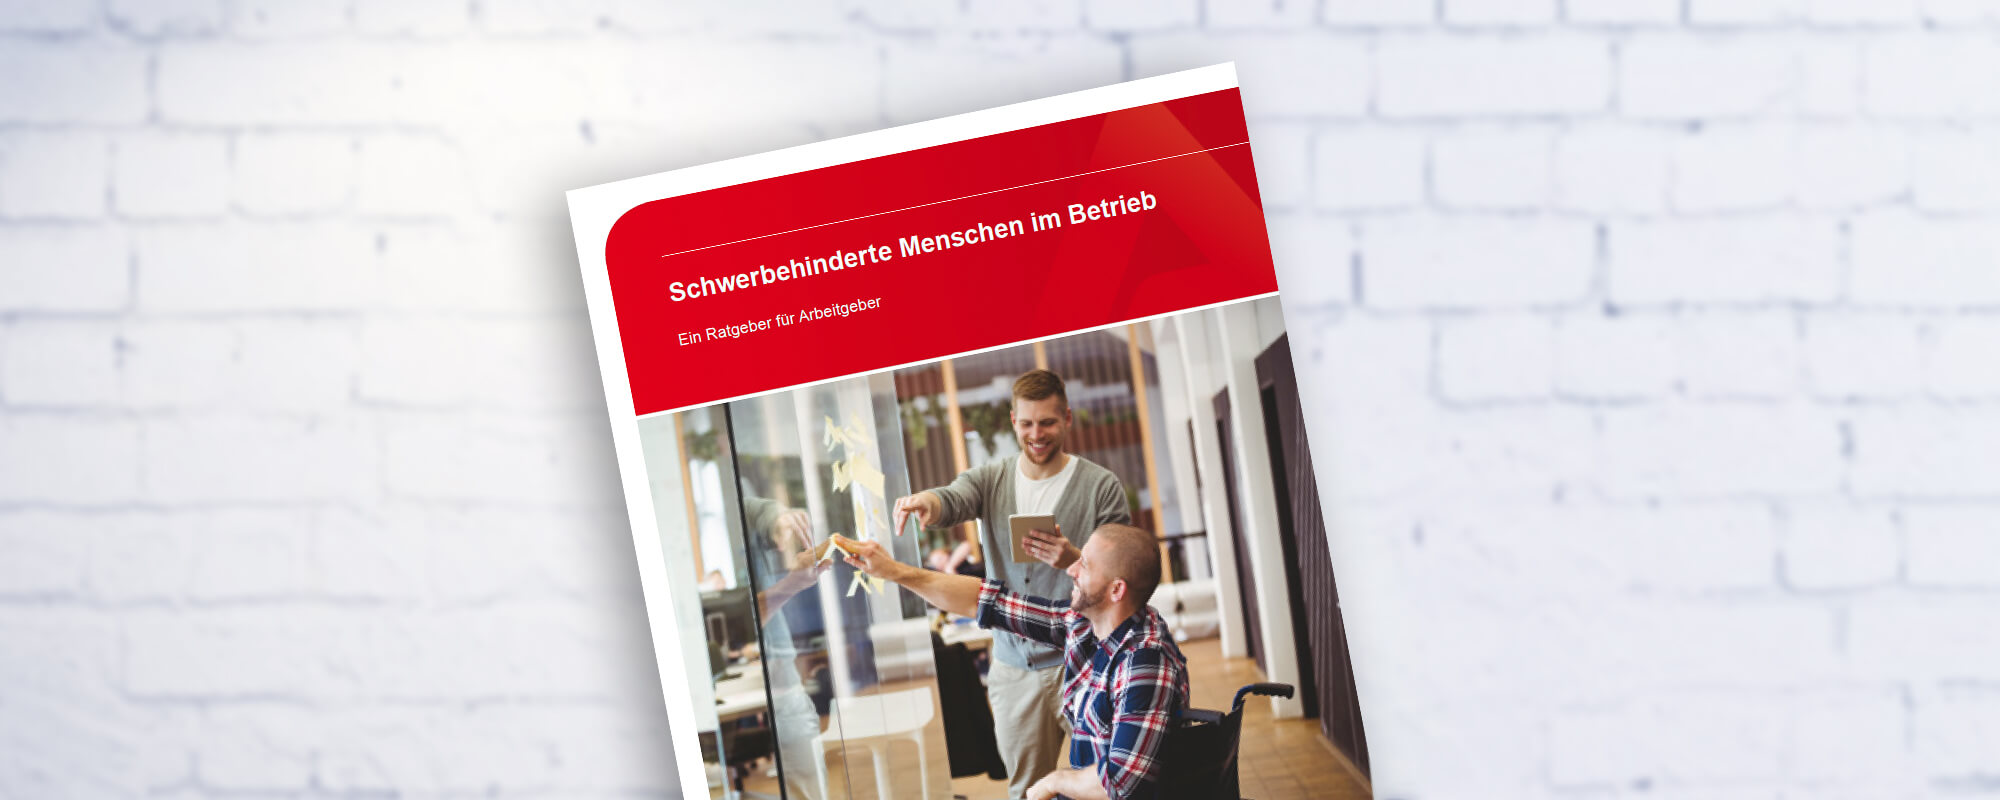 Cover der Publikation "Schwerbehinderte Menschen im Betrieb". 